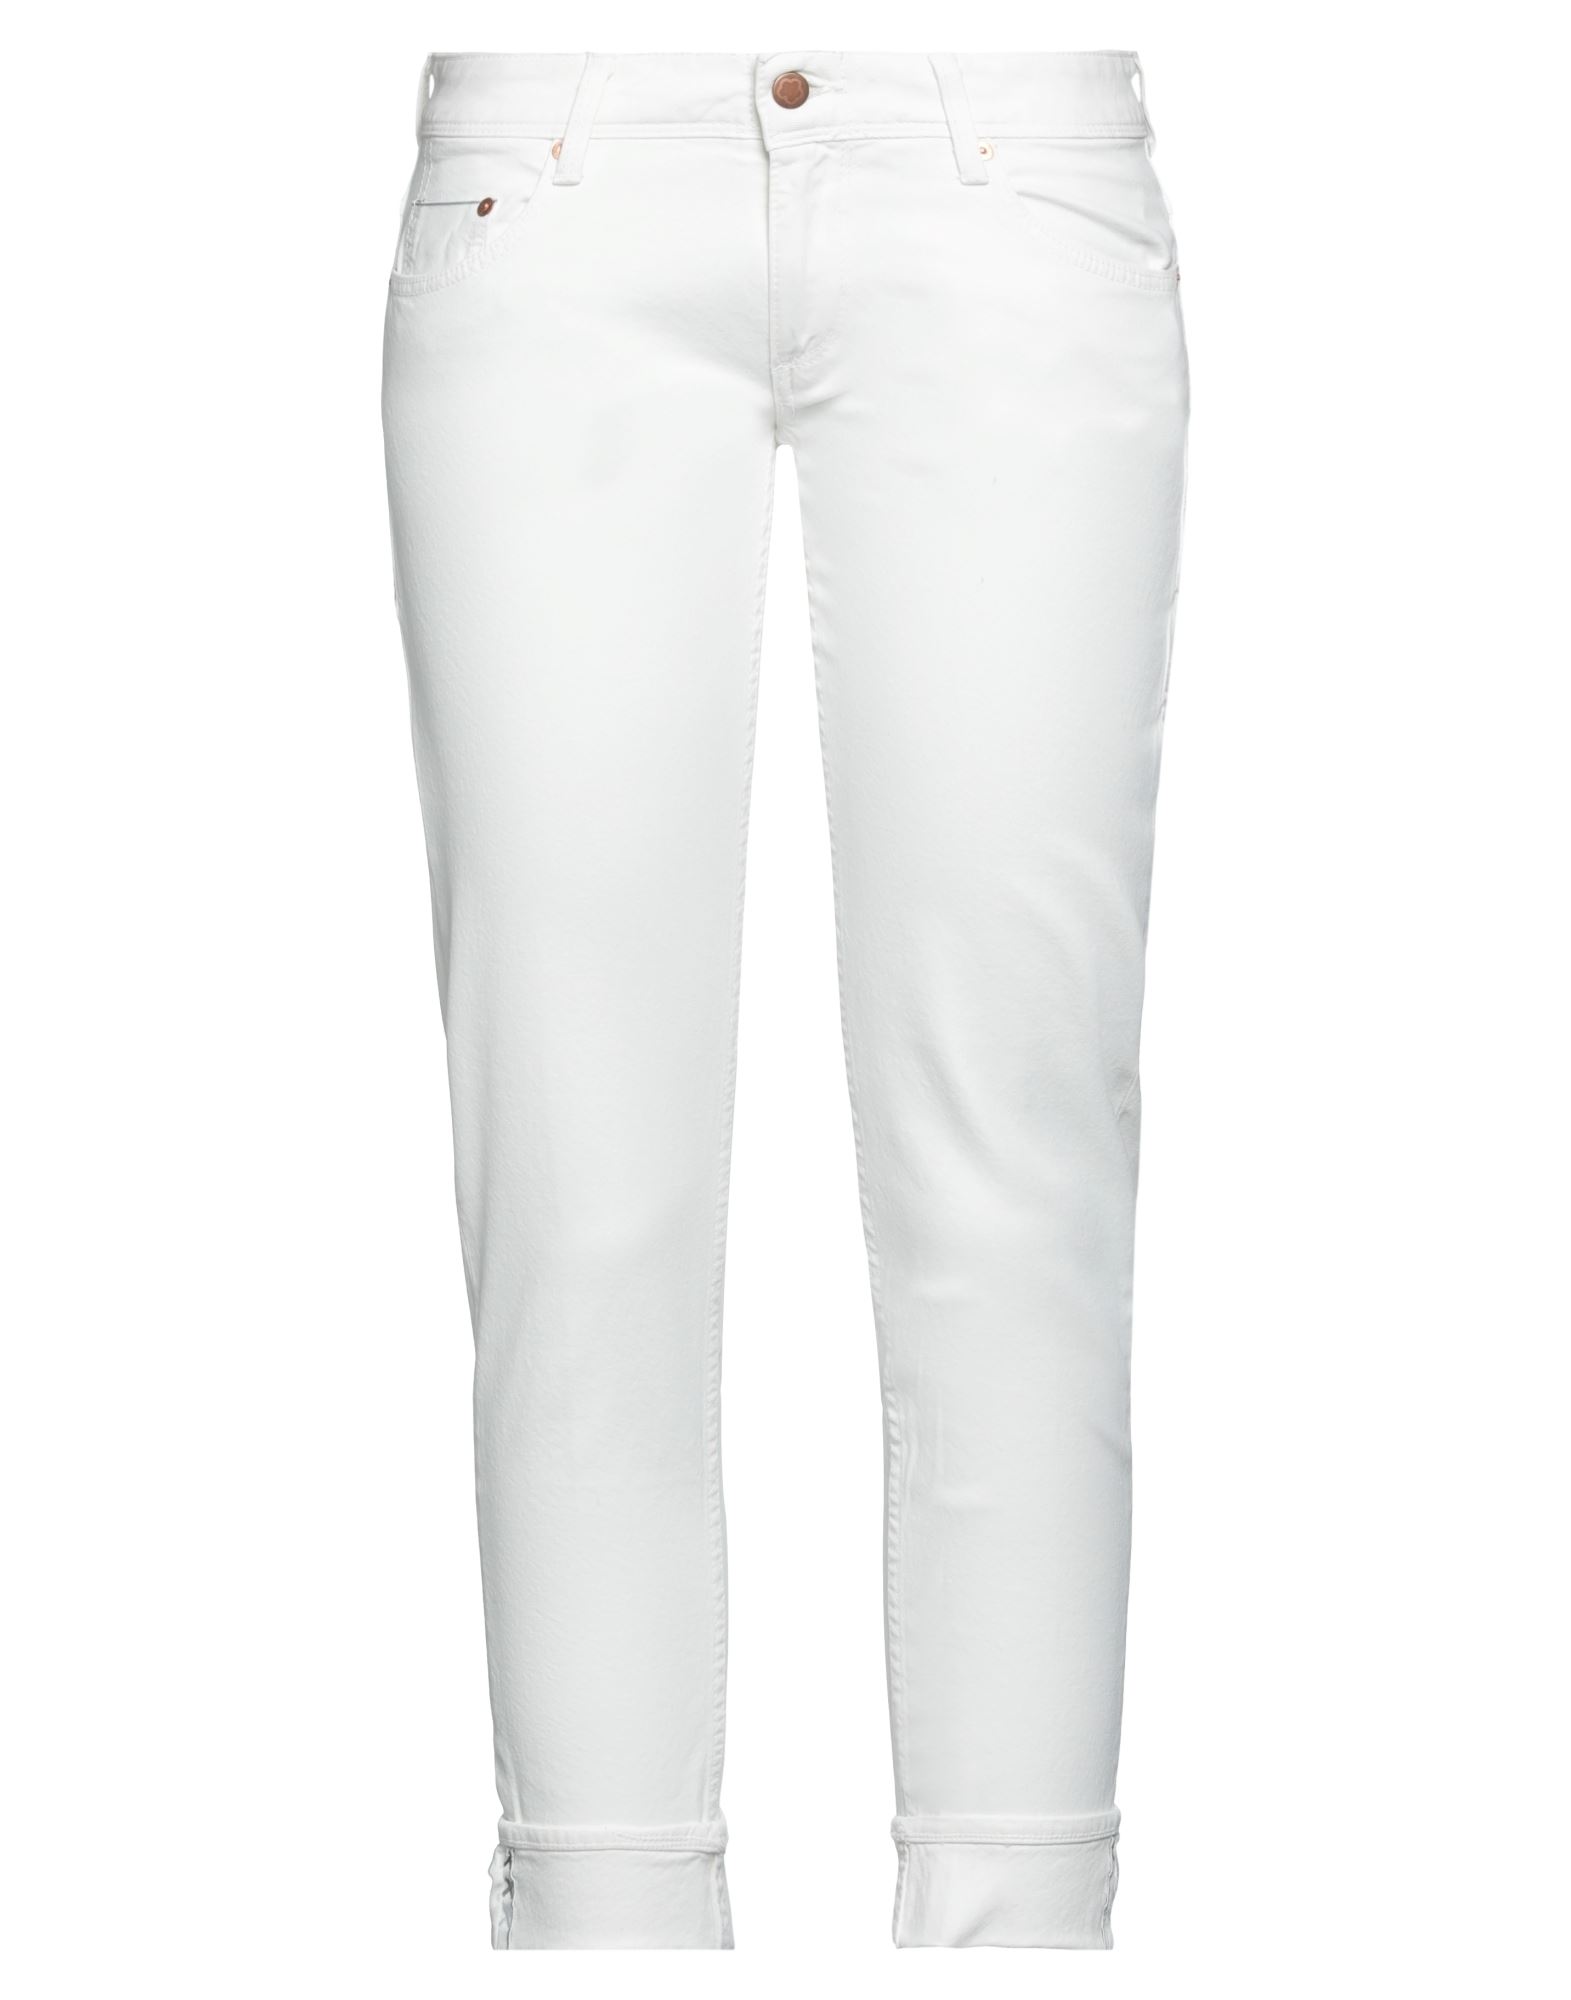 Shop Care Label Woman Jeans White Size 30 Cotton, Elastane